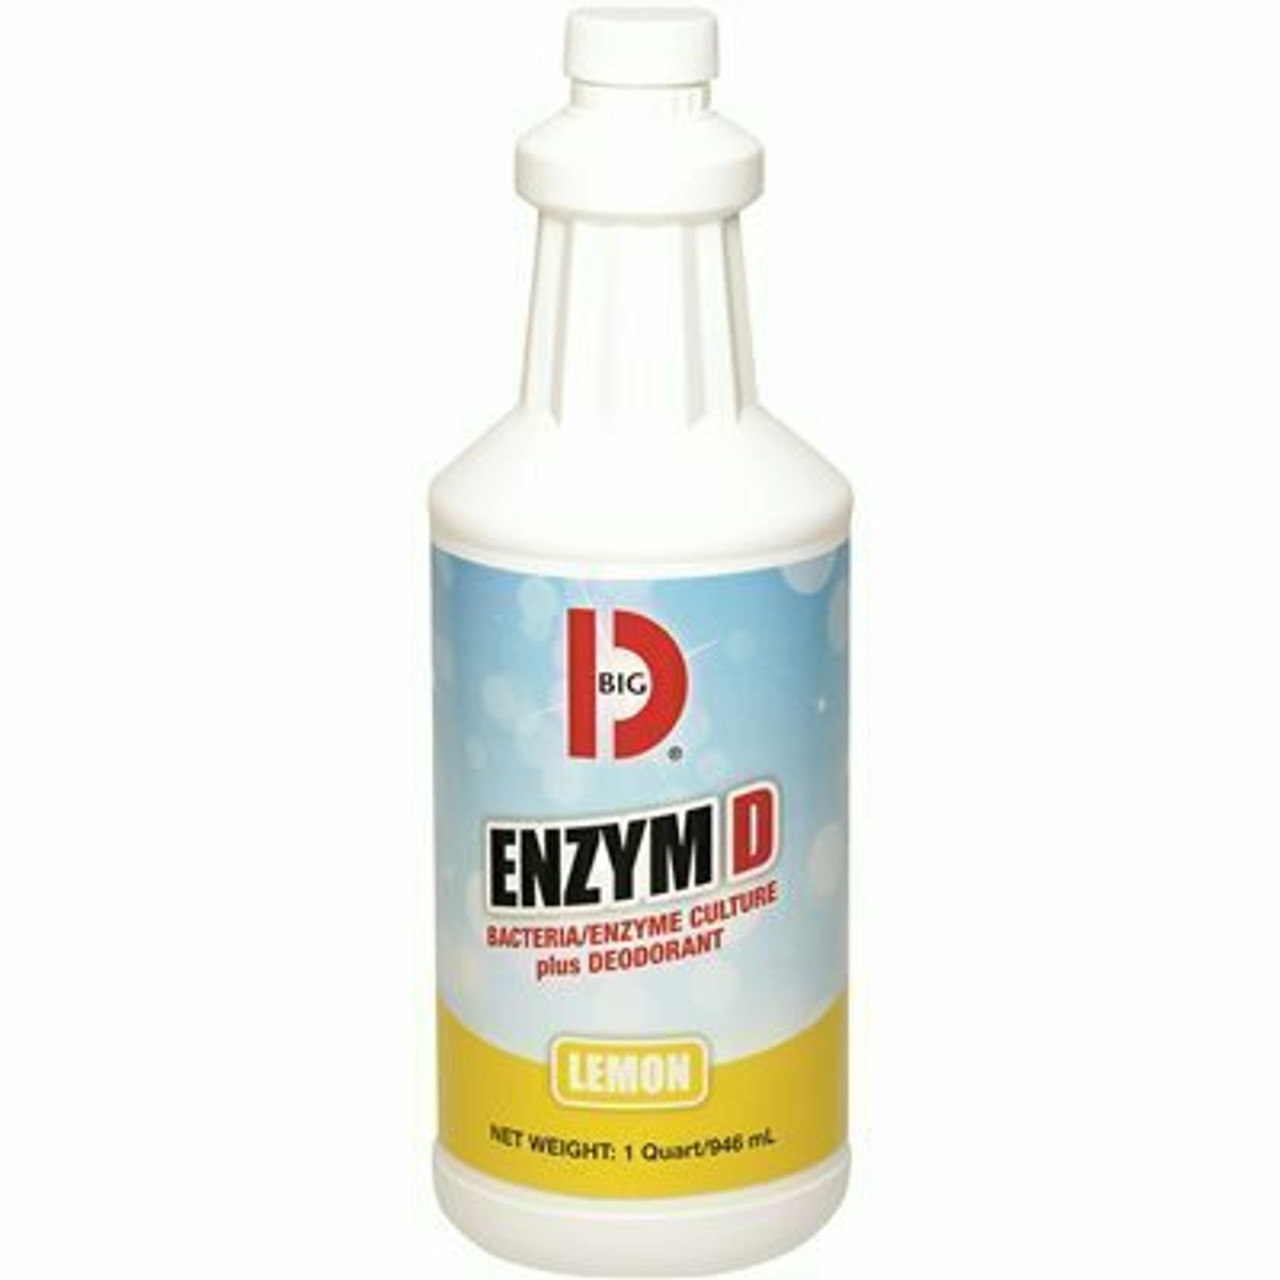 Big D Industries Enzyme D Quart